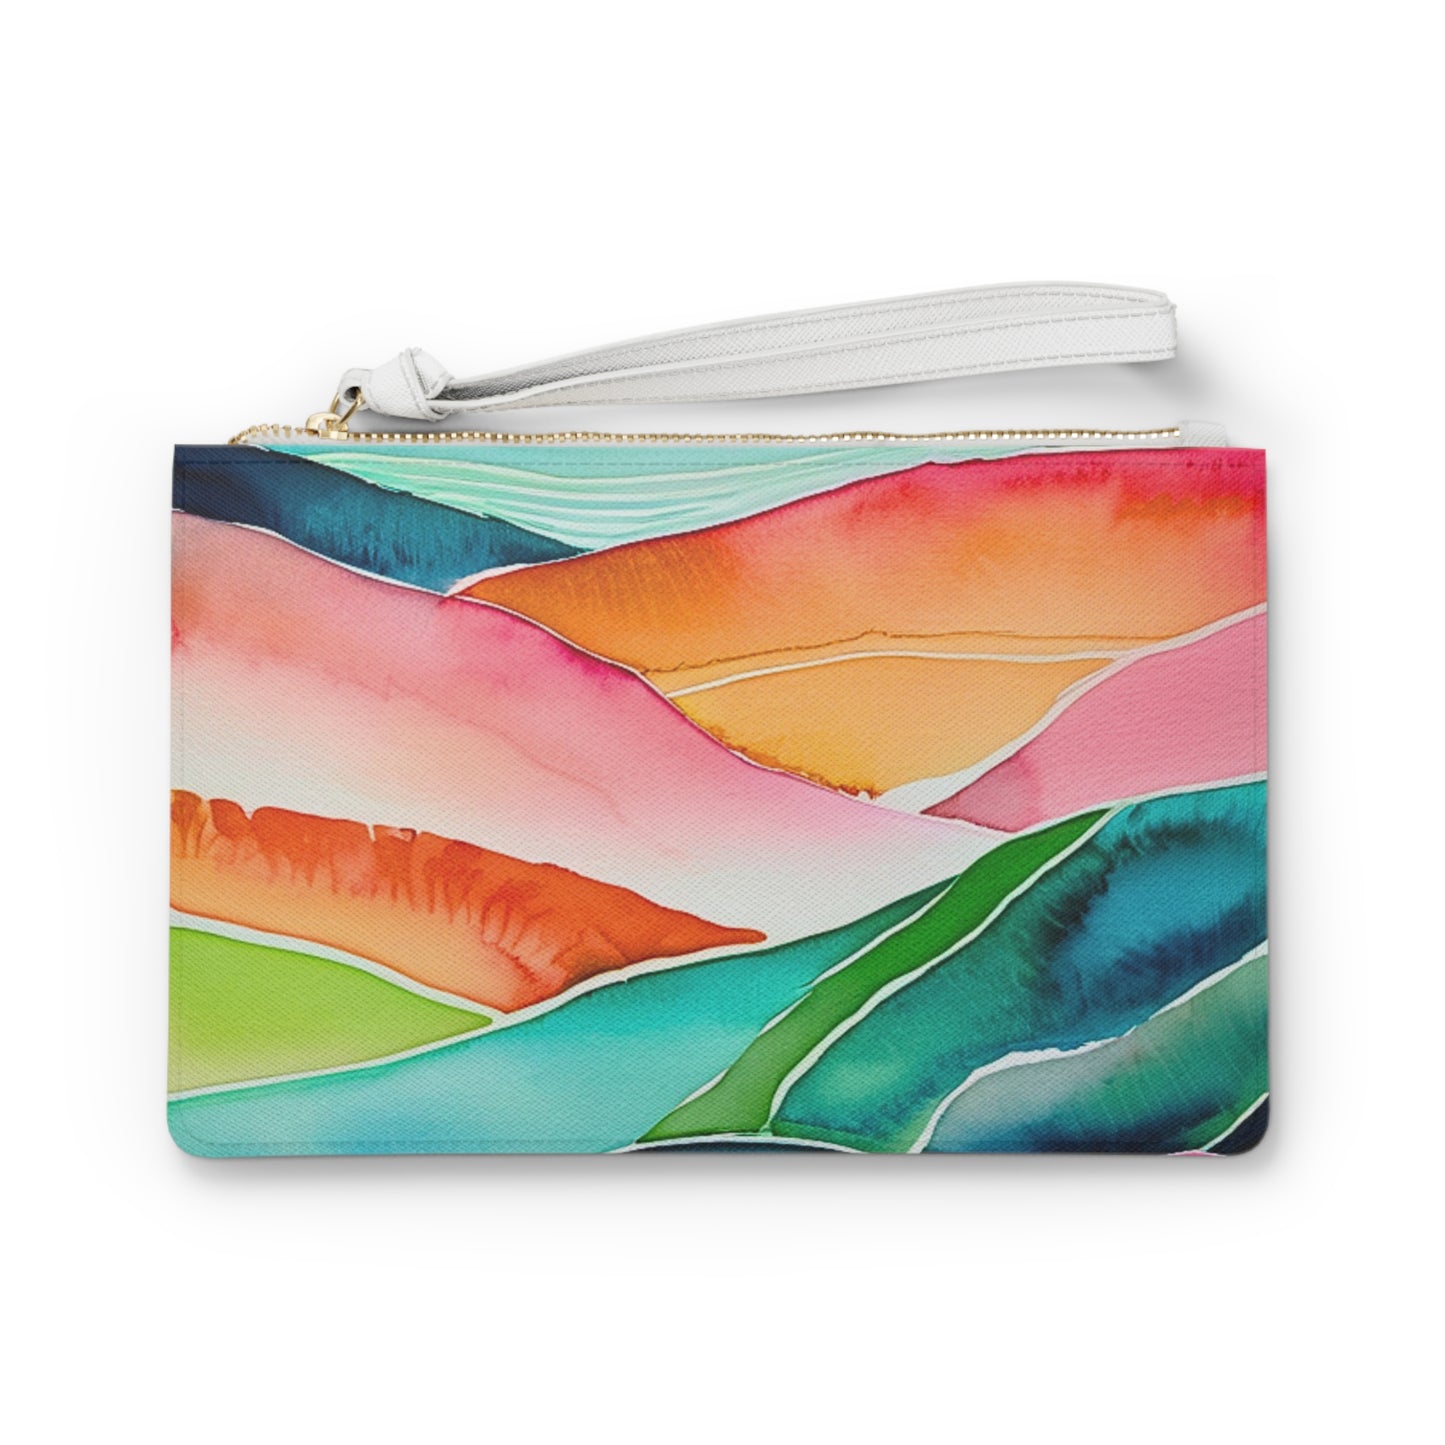 Sunset Sea Meditations Watercolor Landscape Decorative Errands Makeup Evening Pouch Clutch Bag